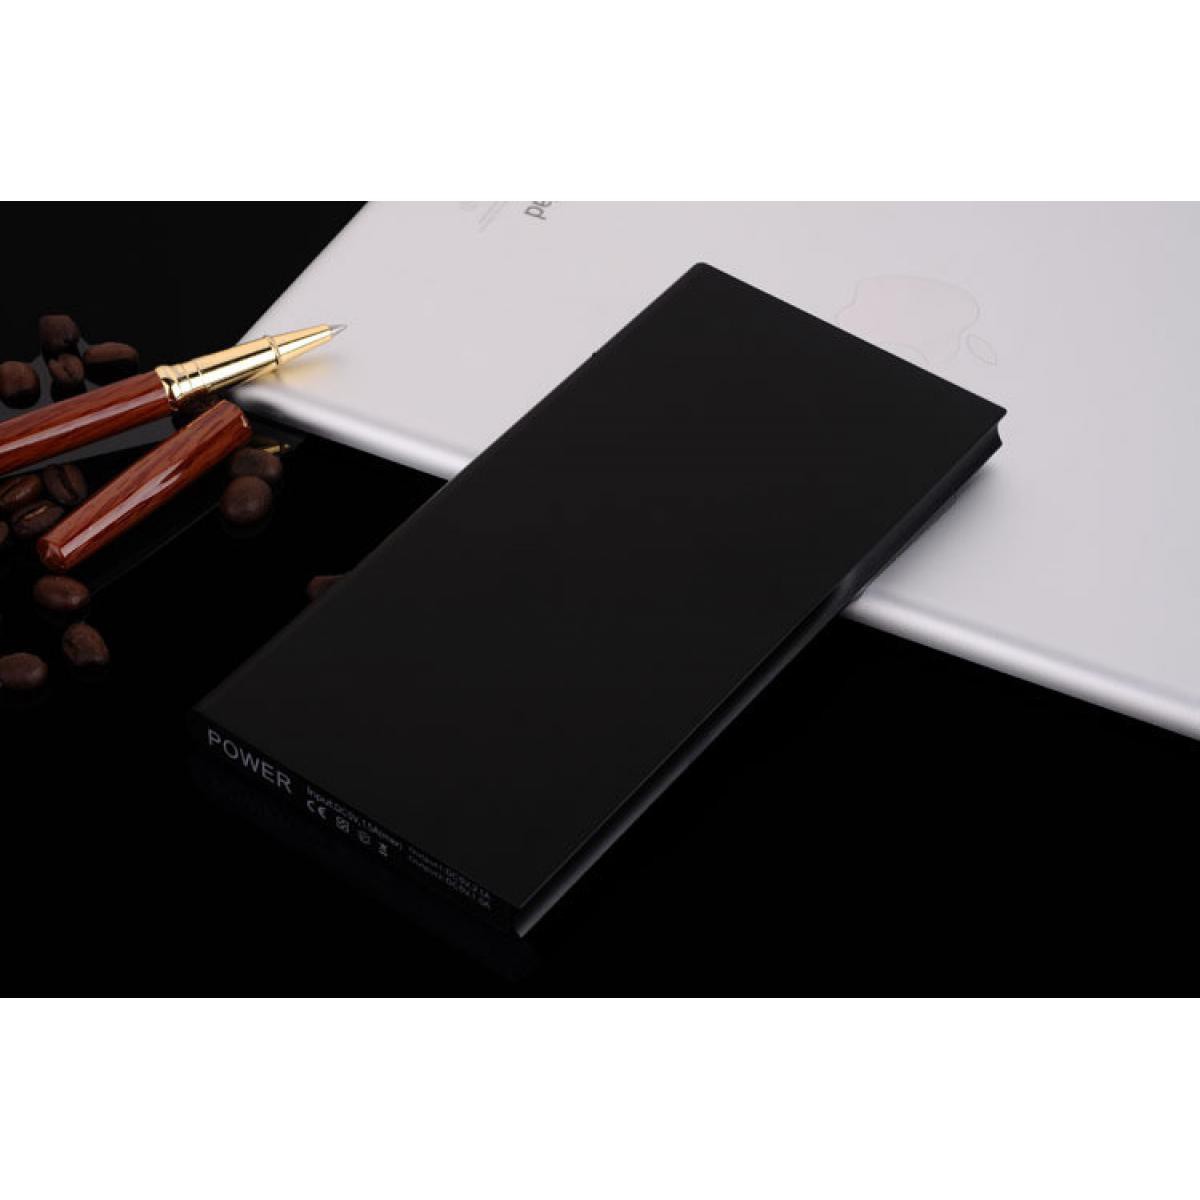 Shot - Batterie Externe Plate pour IPHONE 11 Pro Max Smartphone Tablette Chargeur Power Bank 6000mAh 2 Port USB (NOIR) - Chargeur secteur téléphone